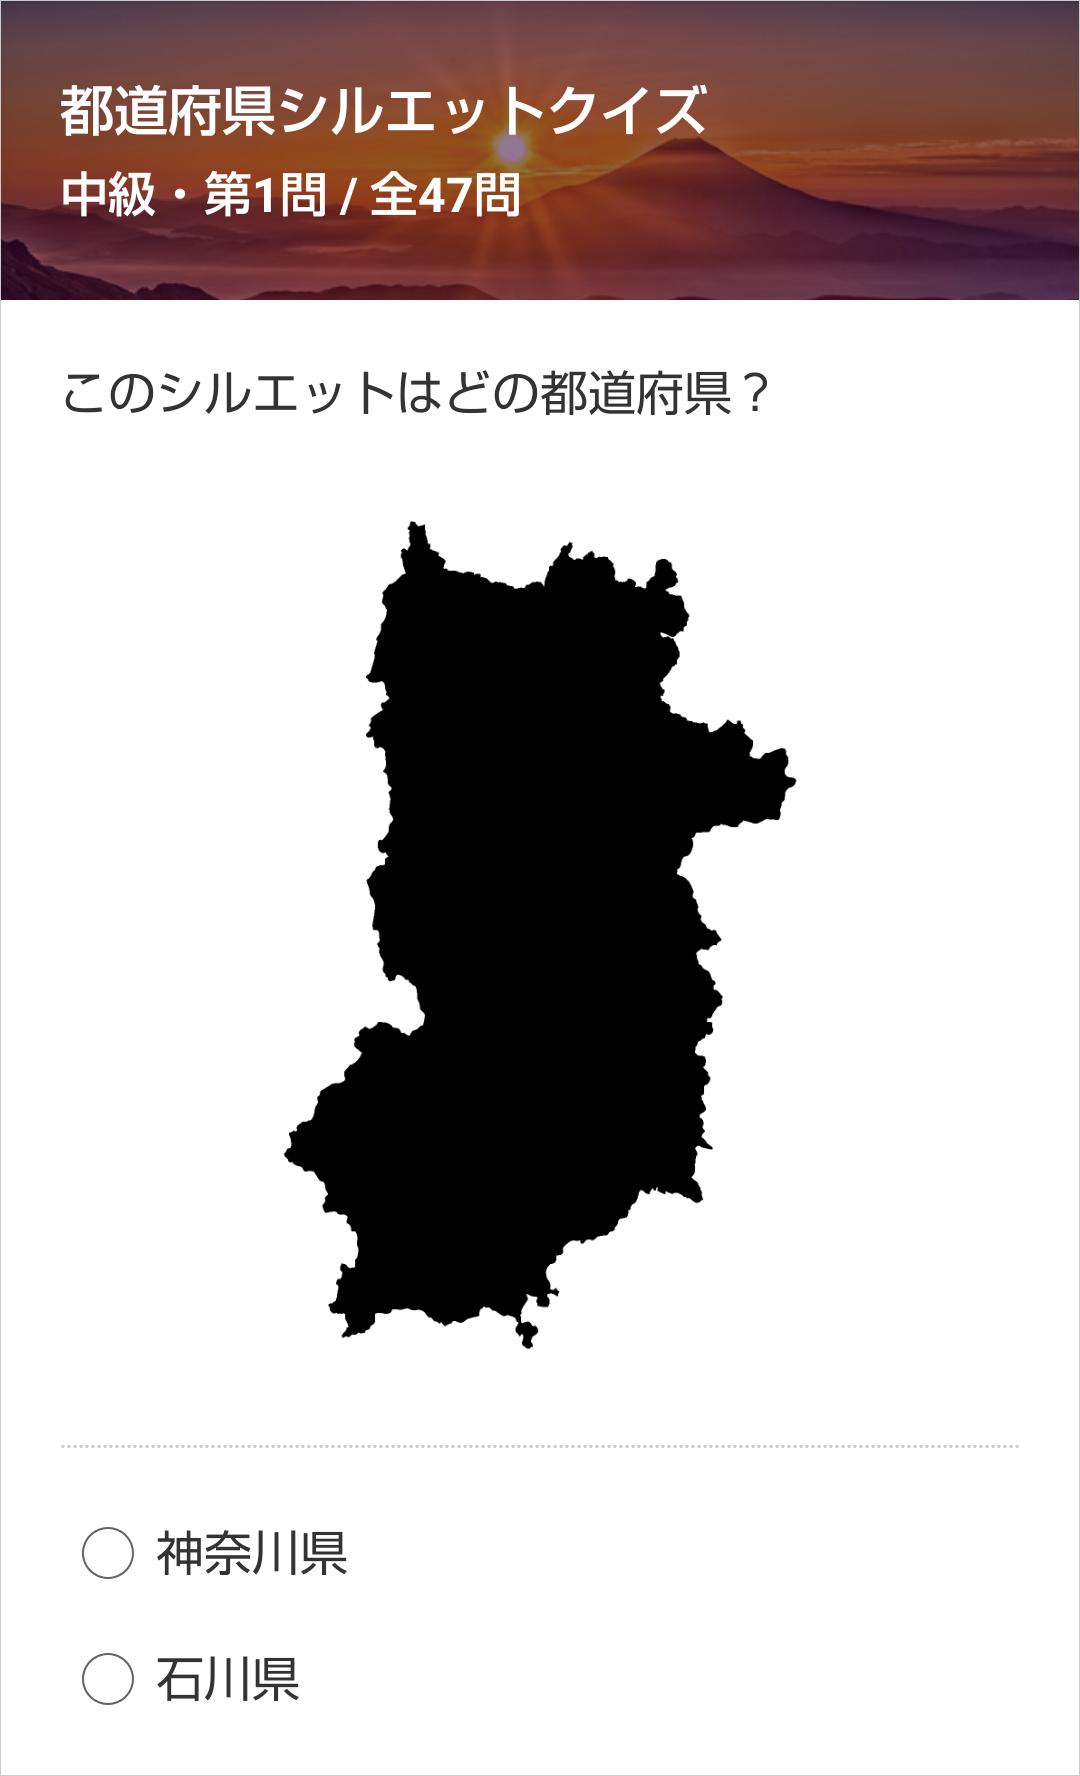 都道府県シルエットクイズ For Android Apk Download